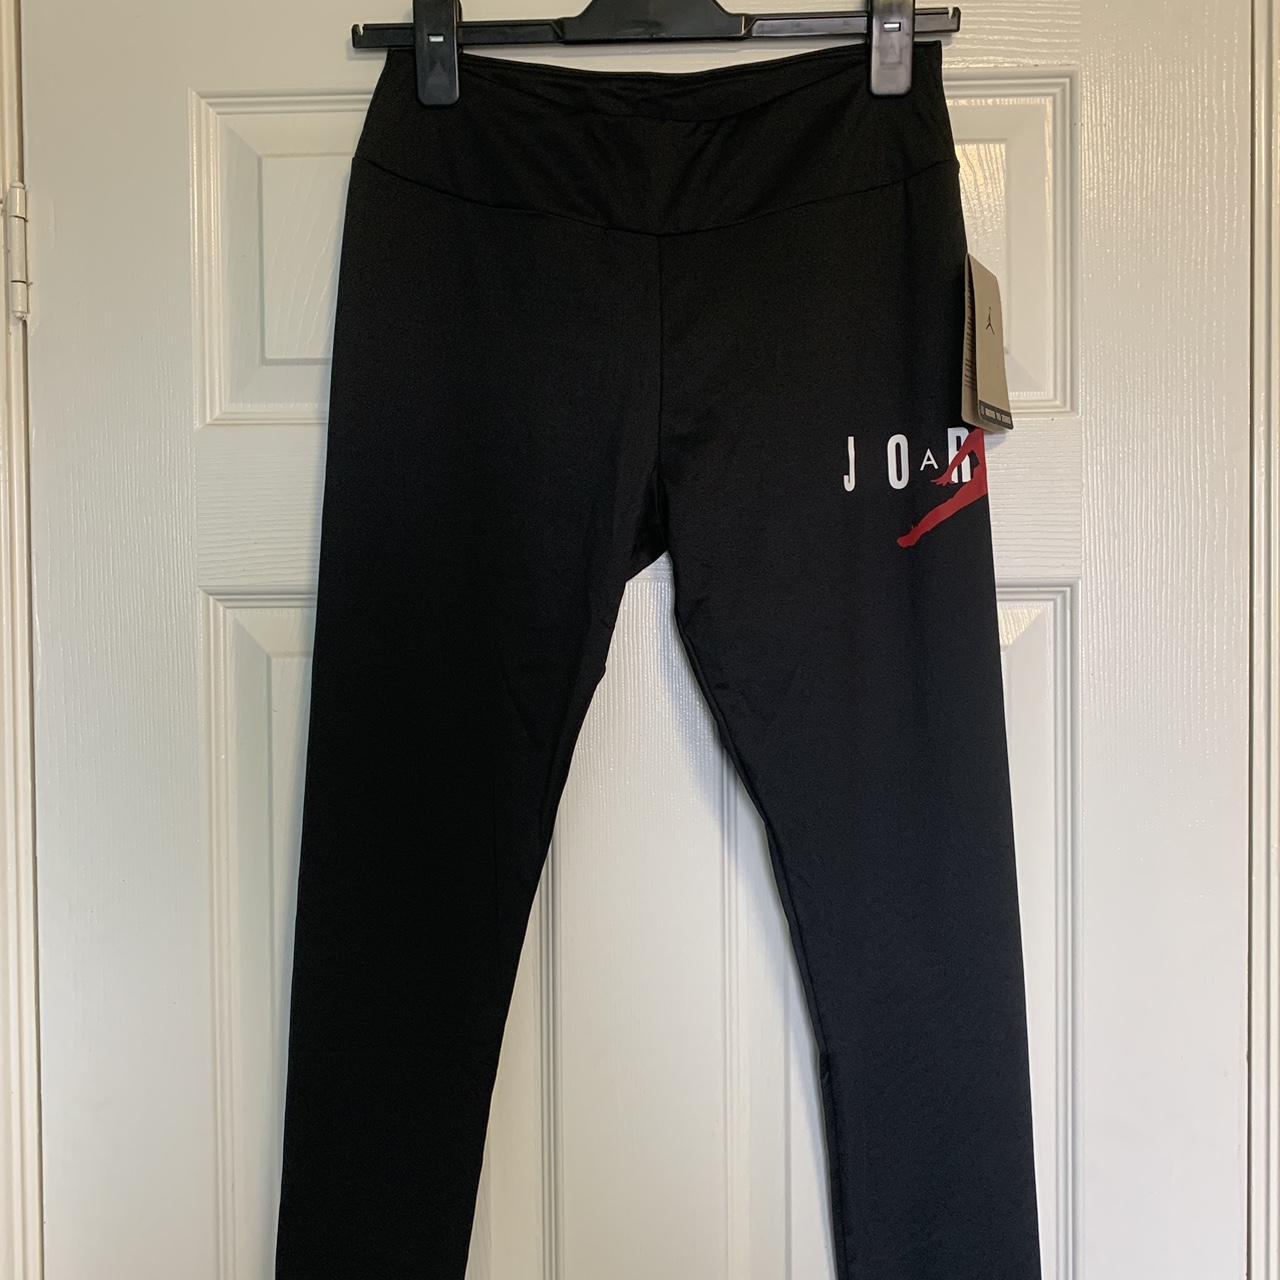 Brand new juniors XL Nike Jordan leggings in black. - Depop